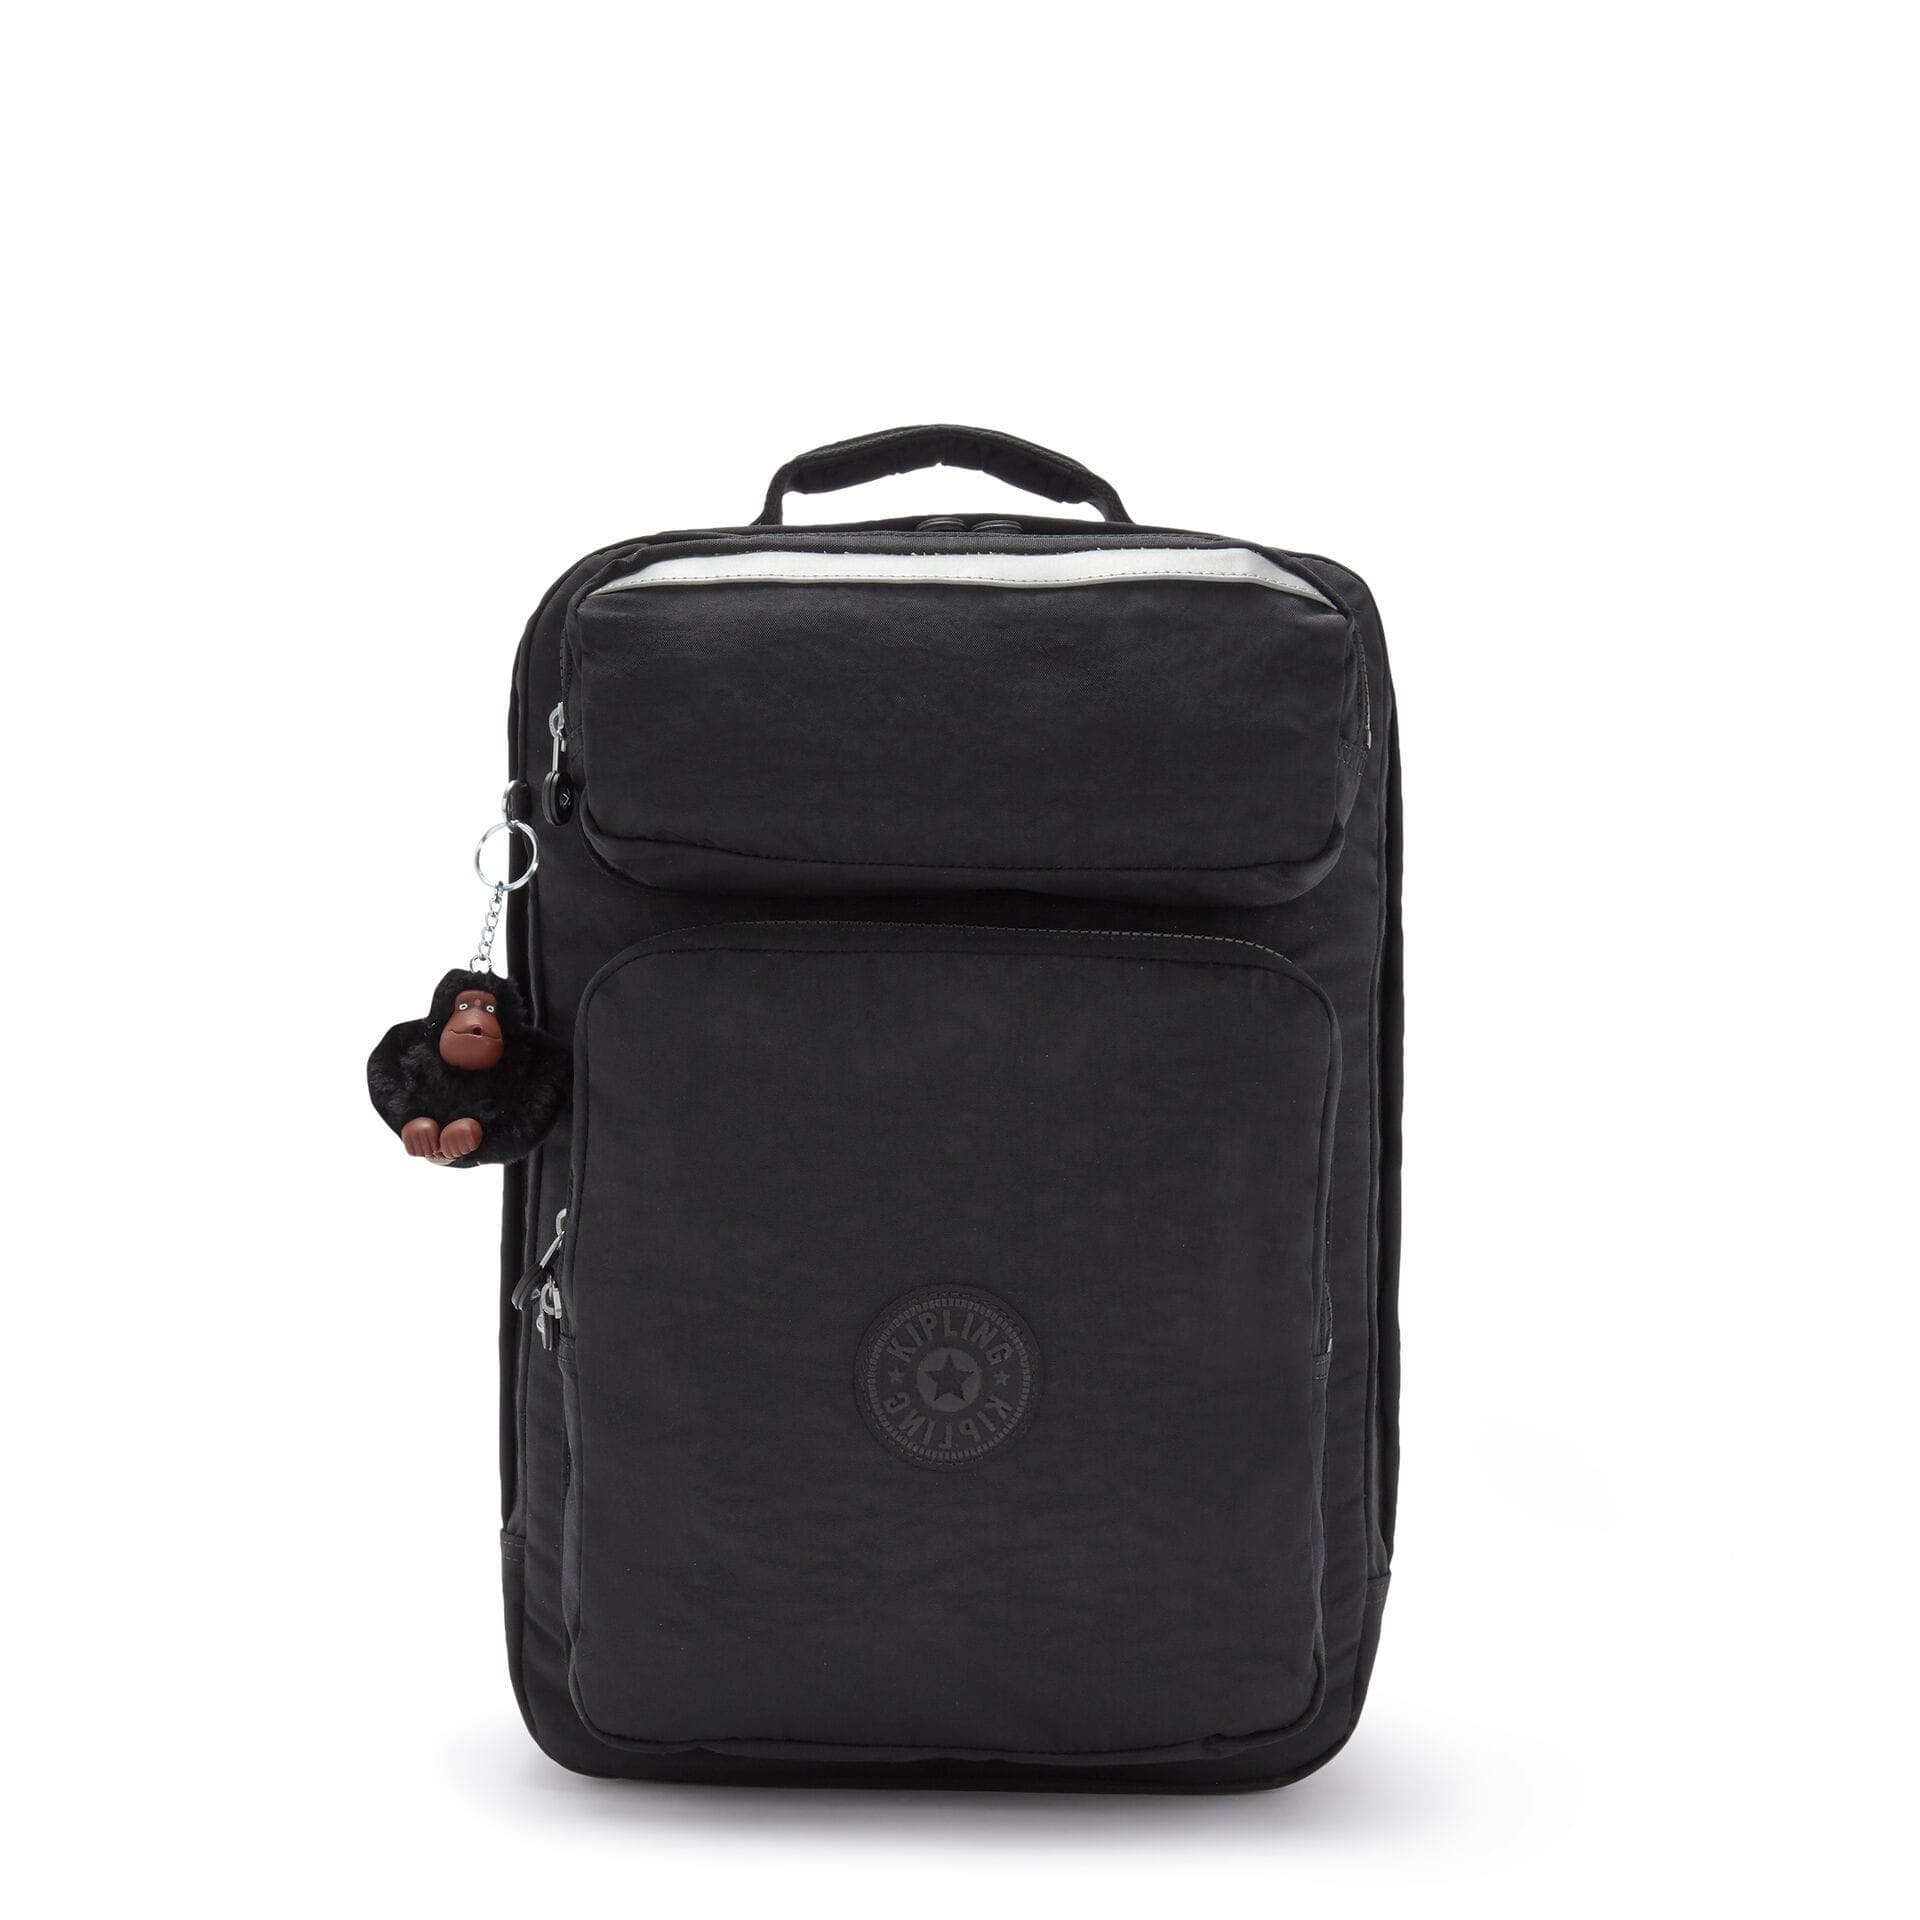 KIPLING-SCOTTY-Large Backpack with Laptop Sleeve-True Black-I7131-J99 - I7131-J99